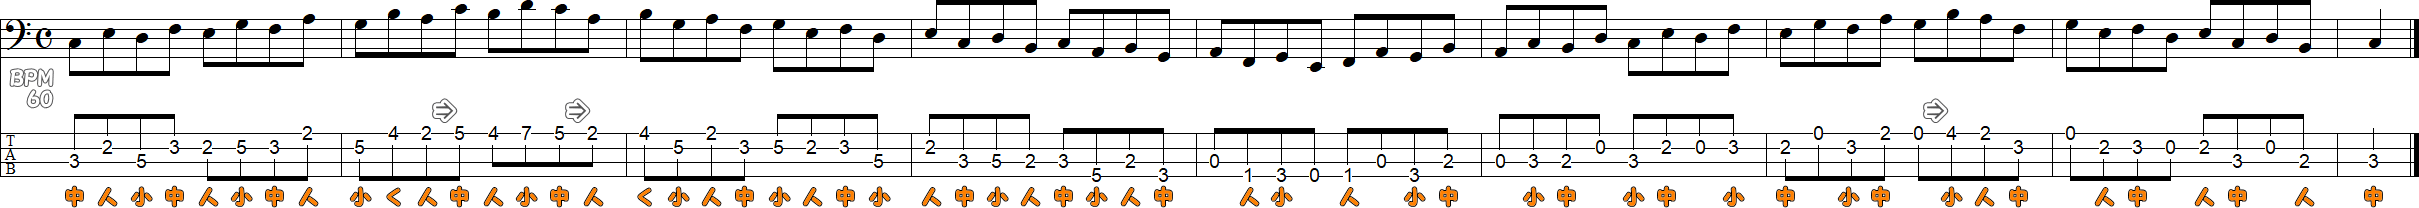 ハ長調のスケール練習2の譜面